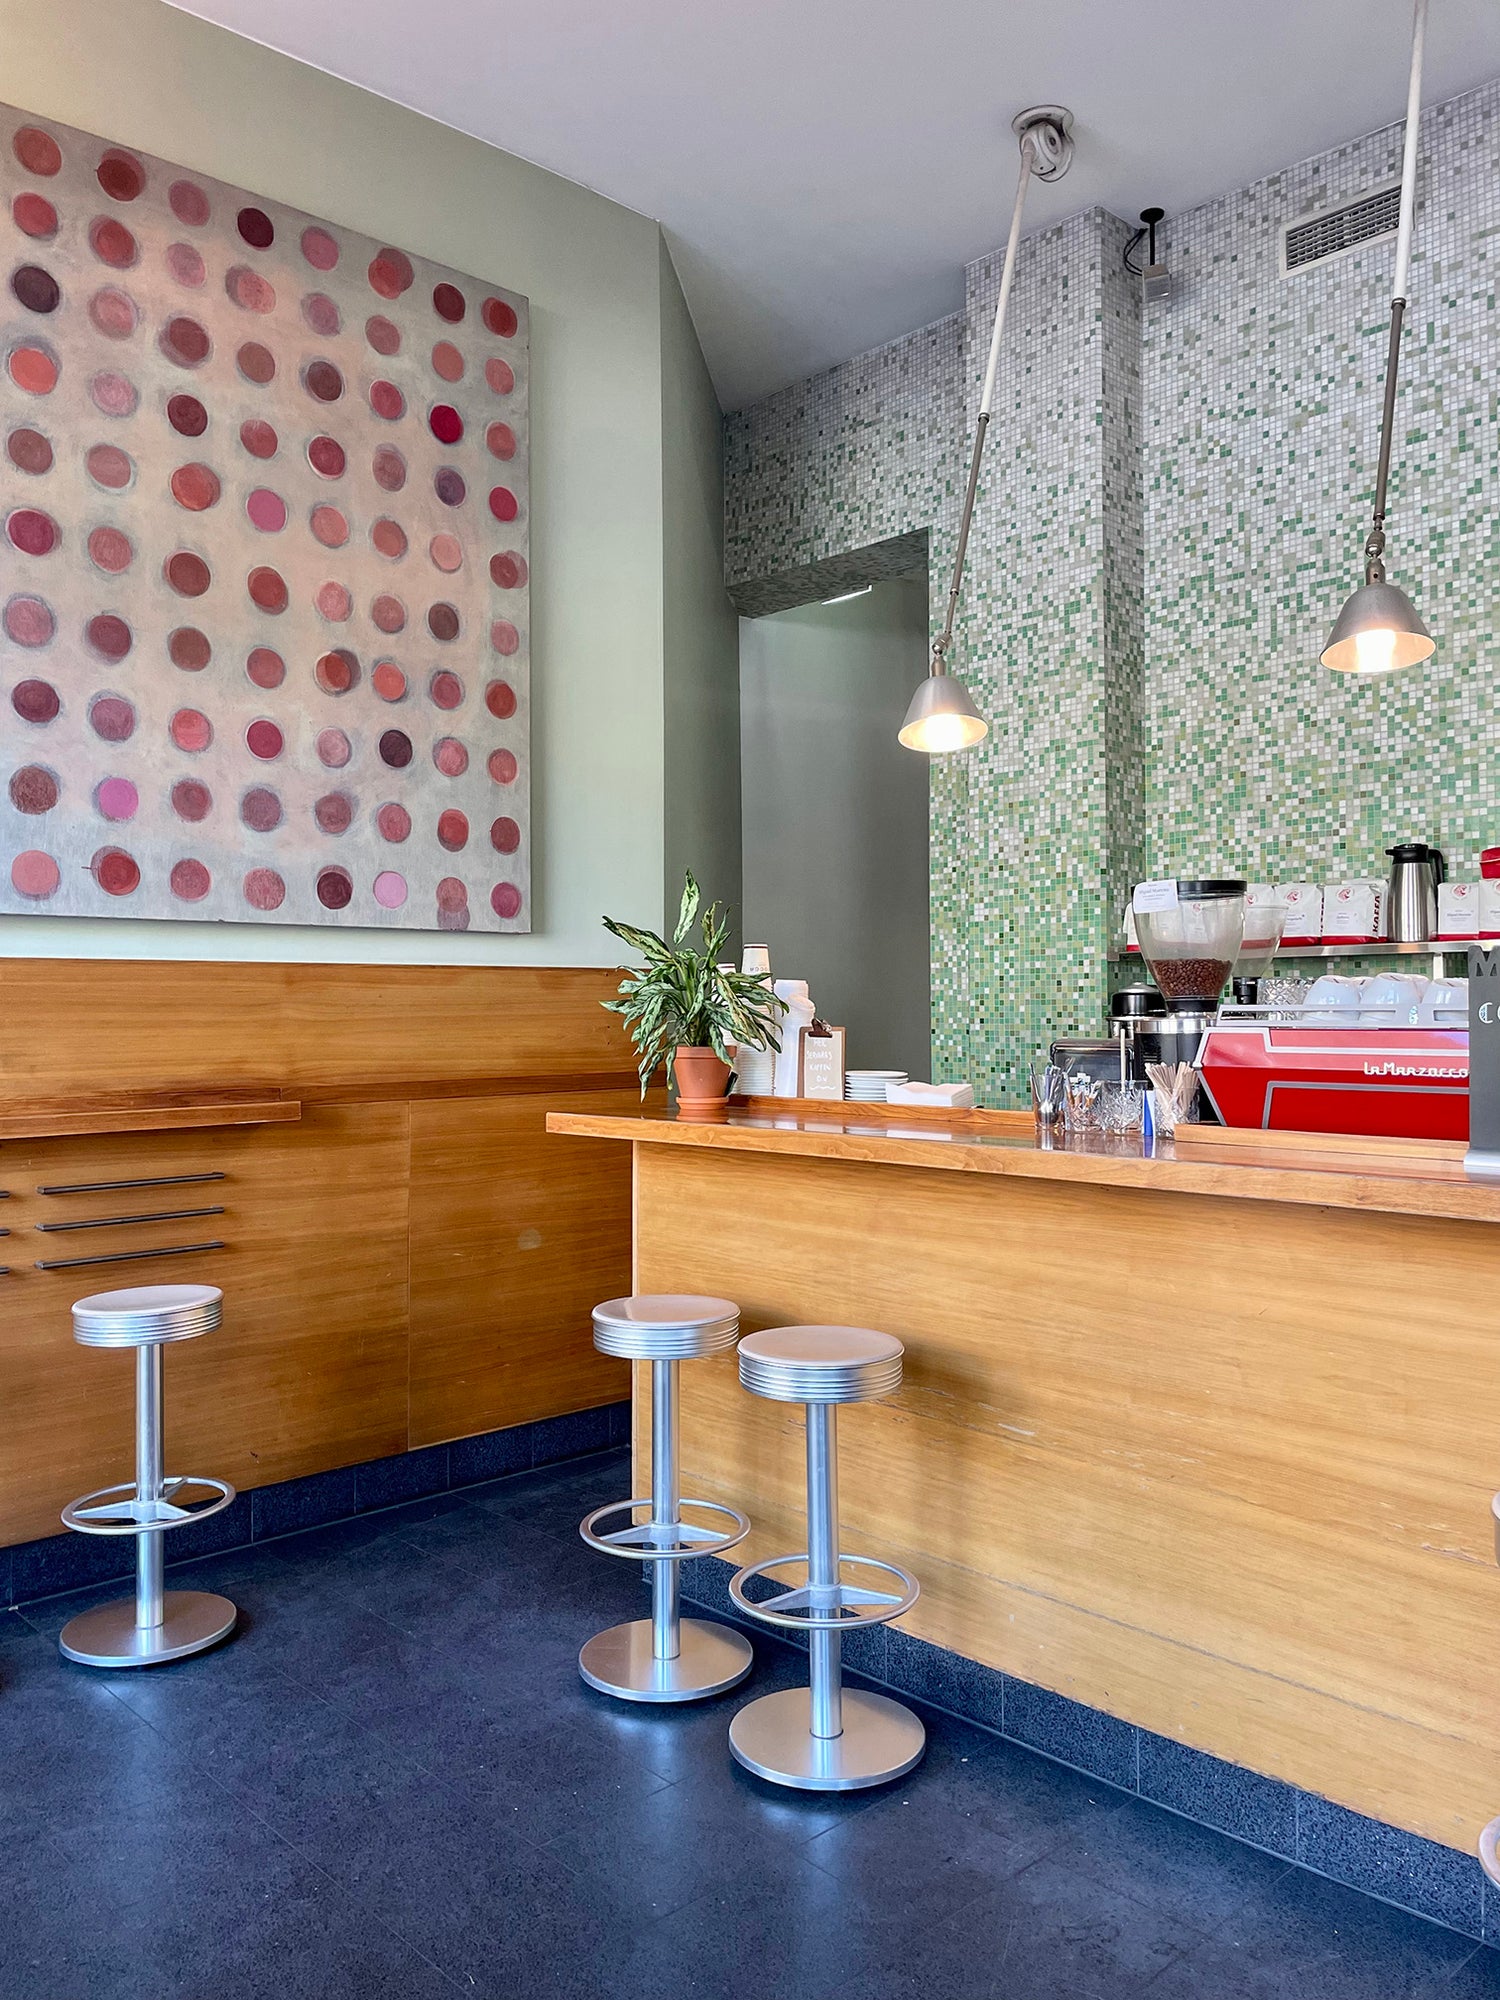 Koselig interiør med barstoler, blått gulv, kaffemaskin hos Java som driver med baristakunst i Ullevålsveien i Oslo